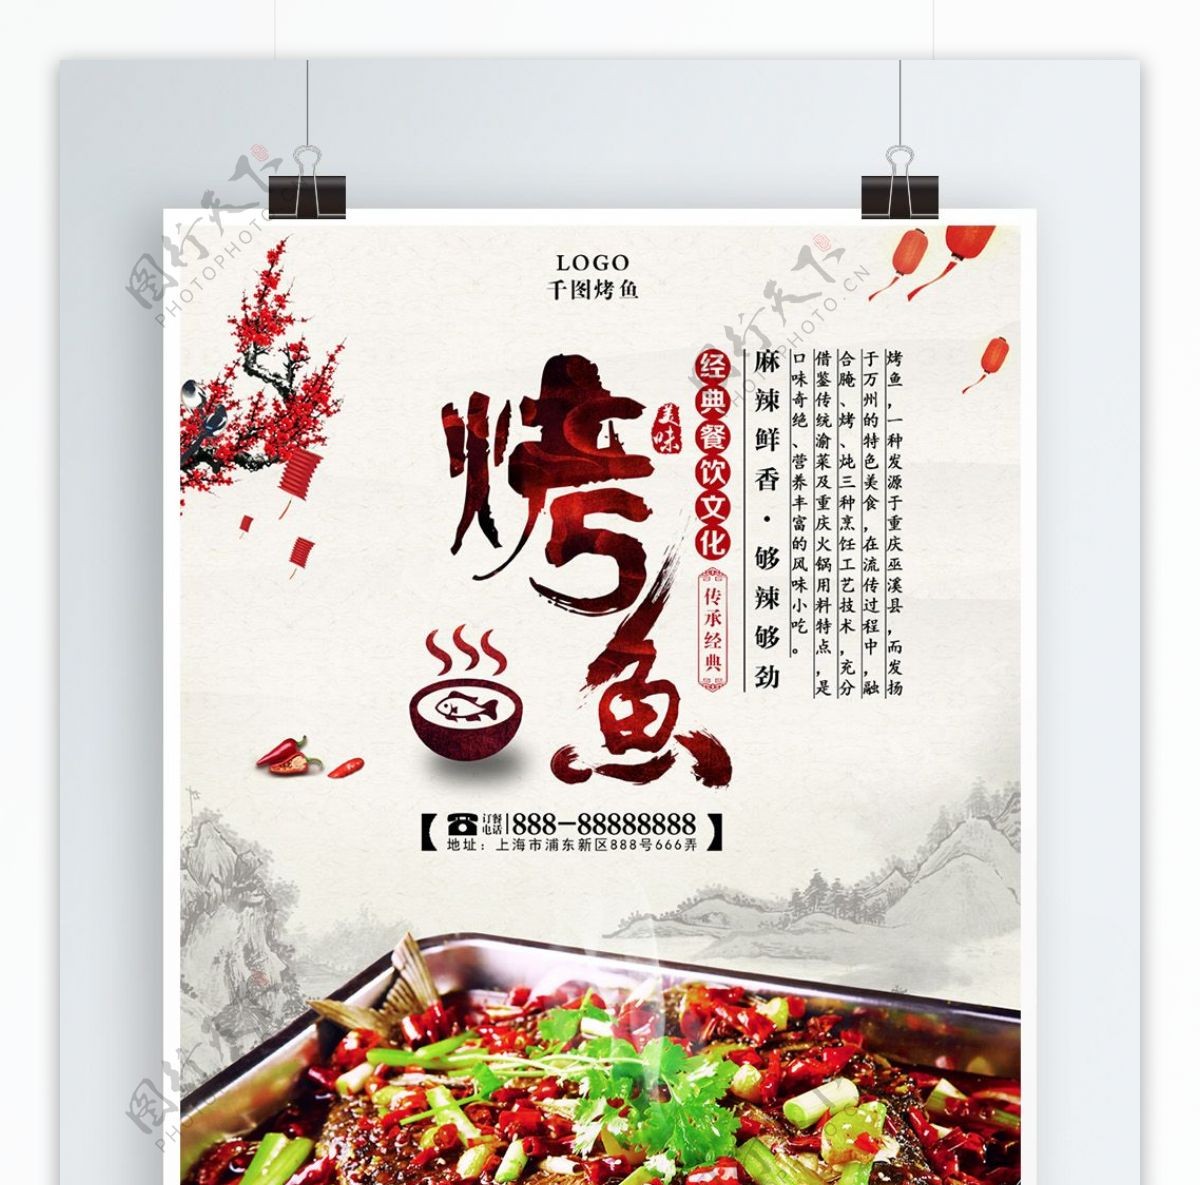 中国风烤鱼美食宣传海报